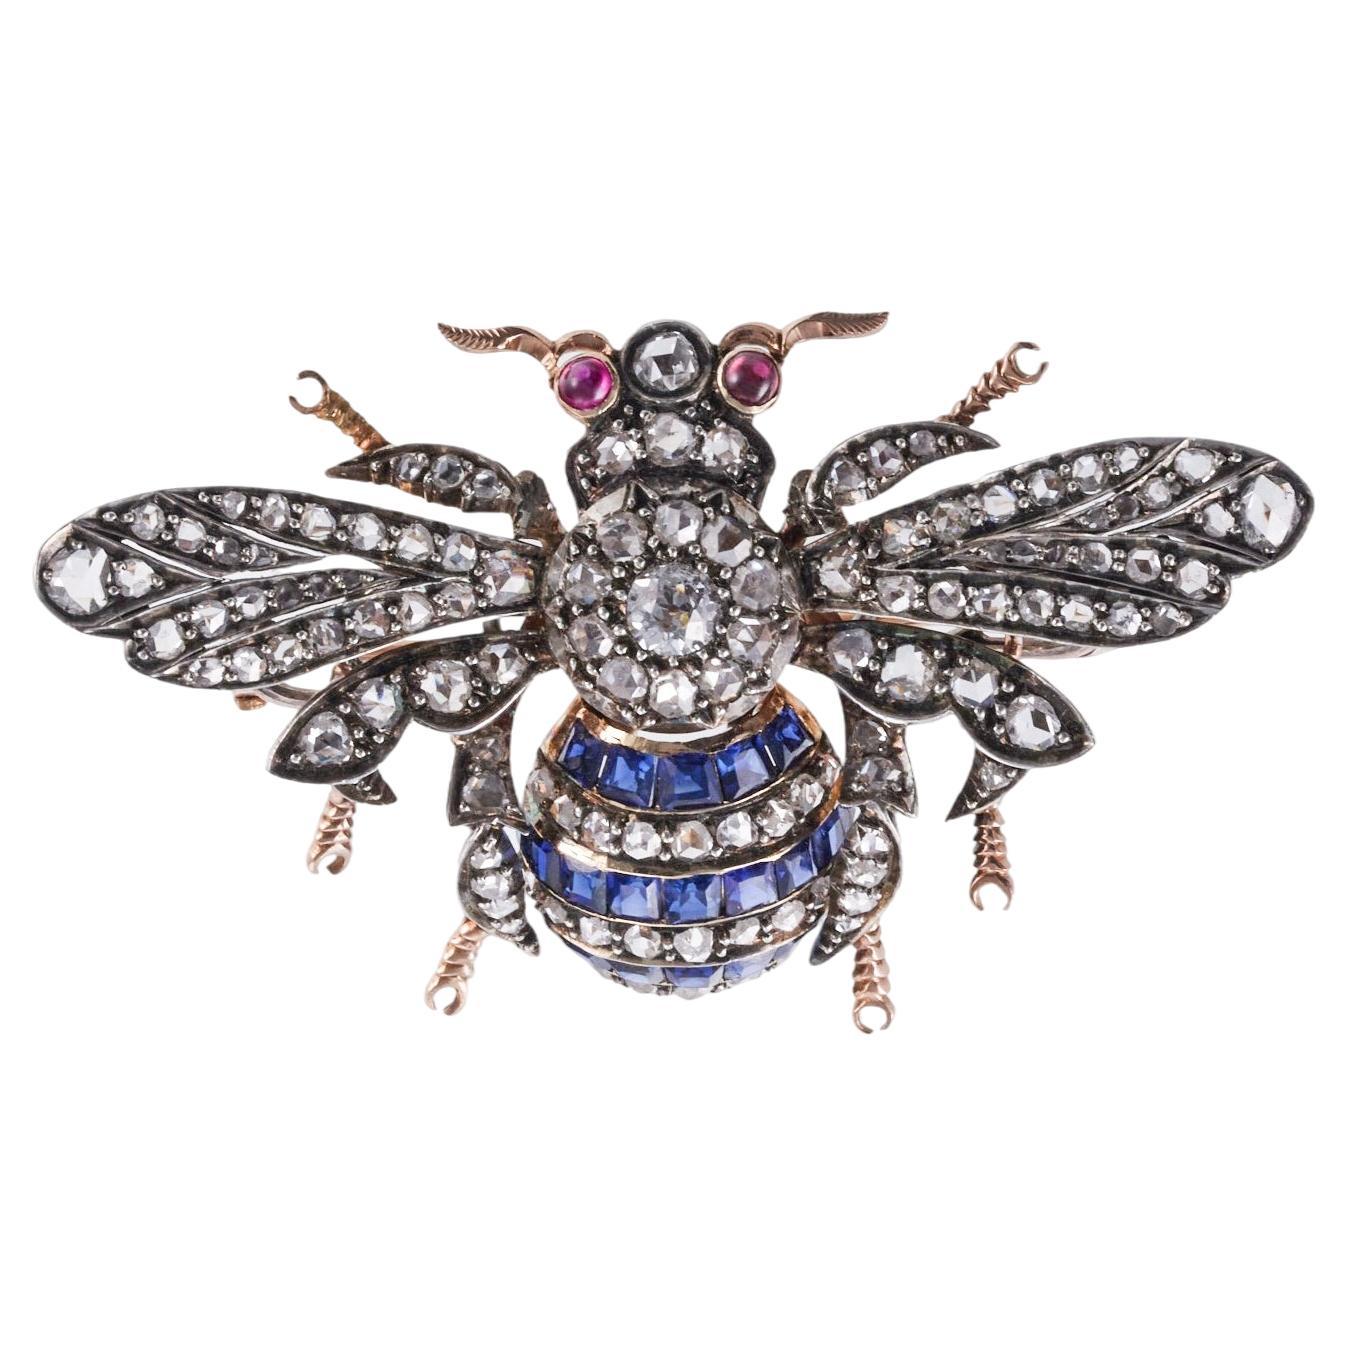 Antike Bienenbrosche mit Diamanten, Rubin, Saphiren, Gold und Silber mit Insekten 